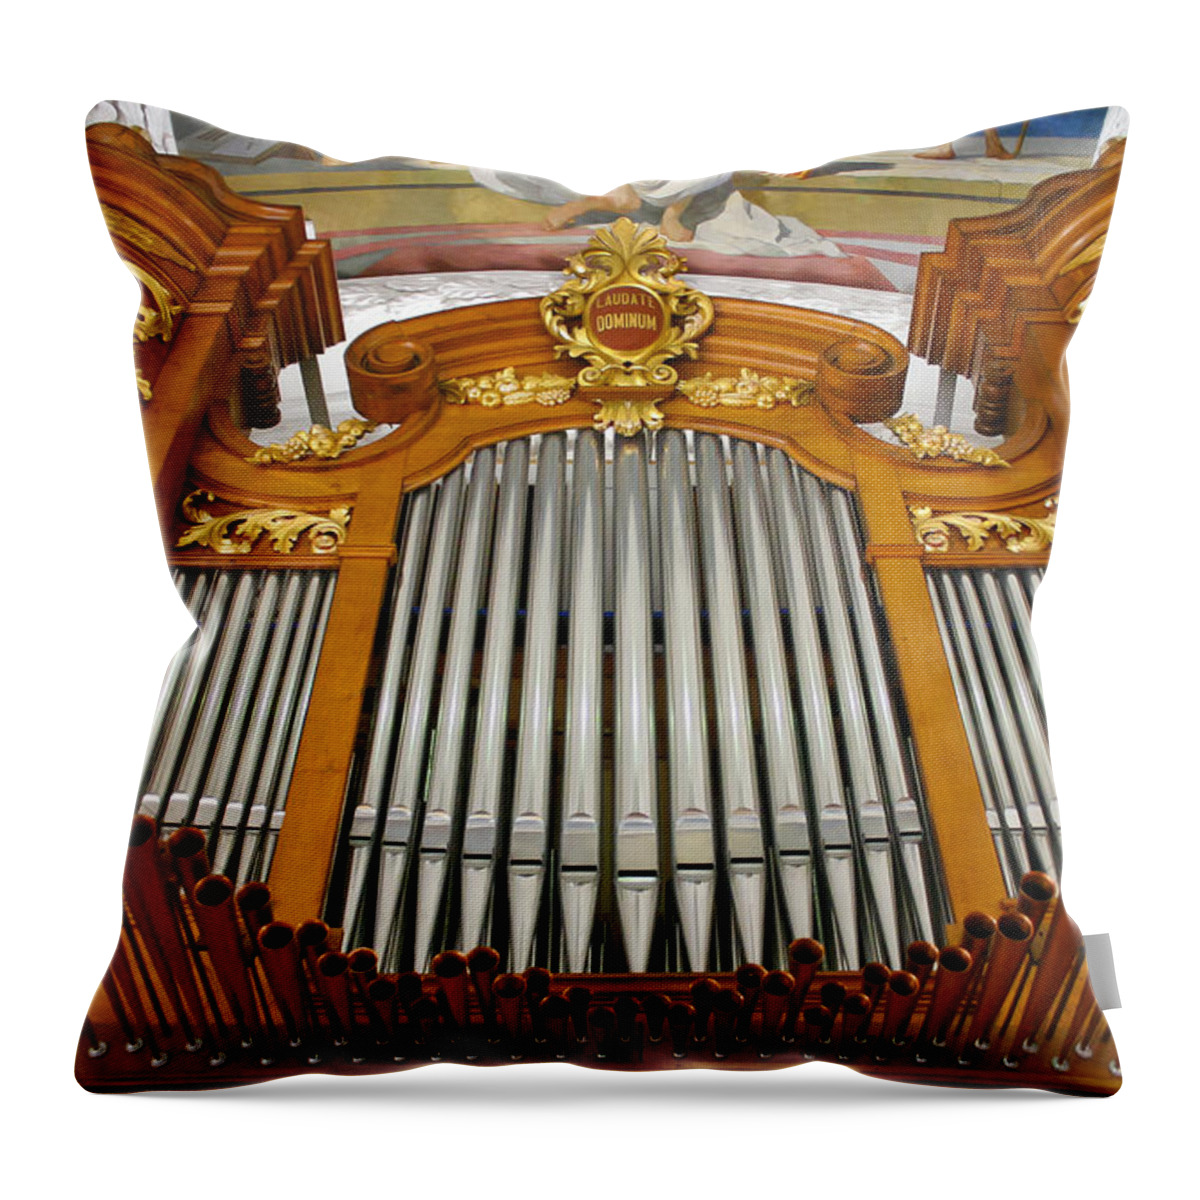 Arth Goldau Throw Pillow featuring the photograph Arth Goldau organ by Jenny Setchell